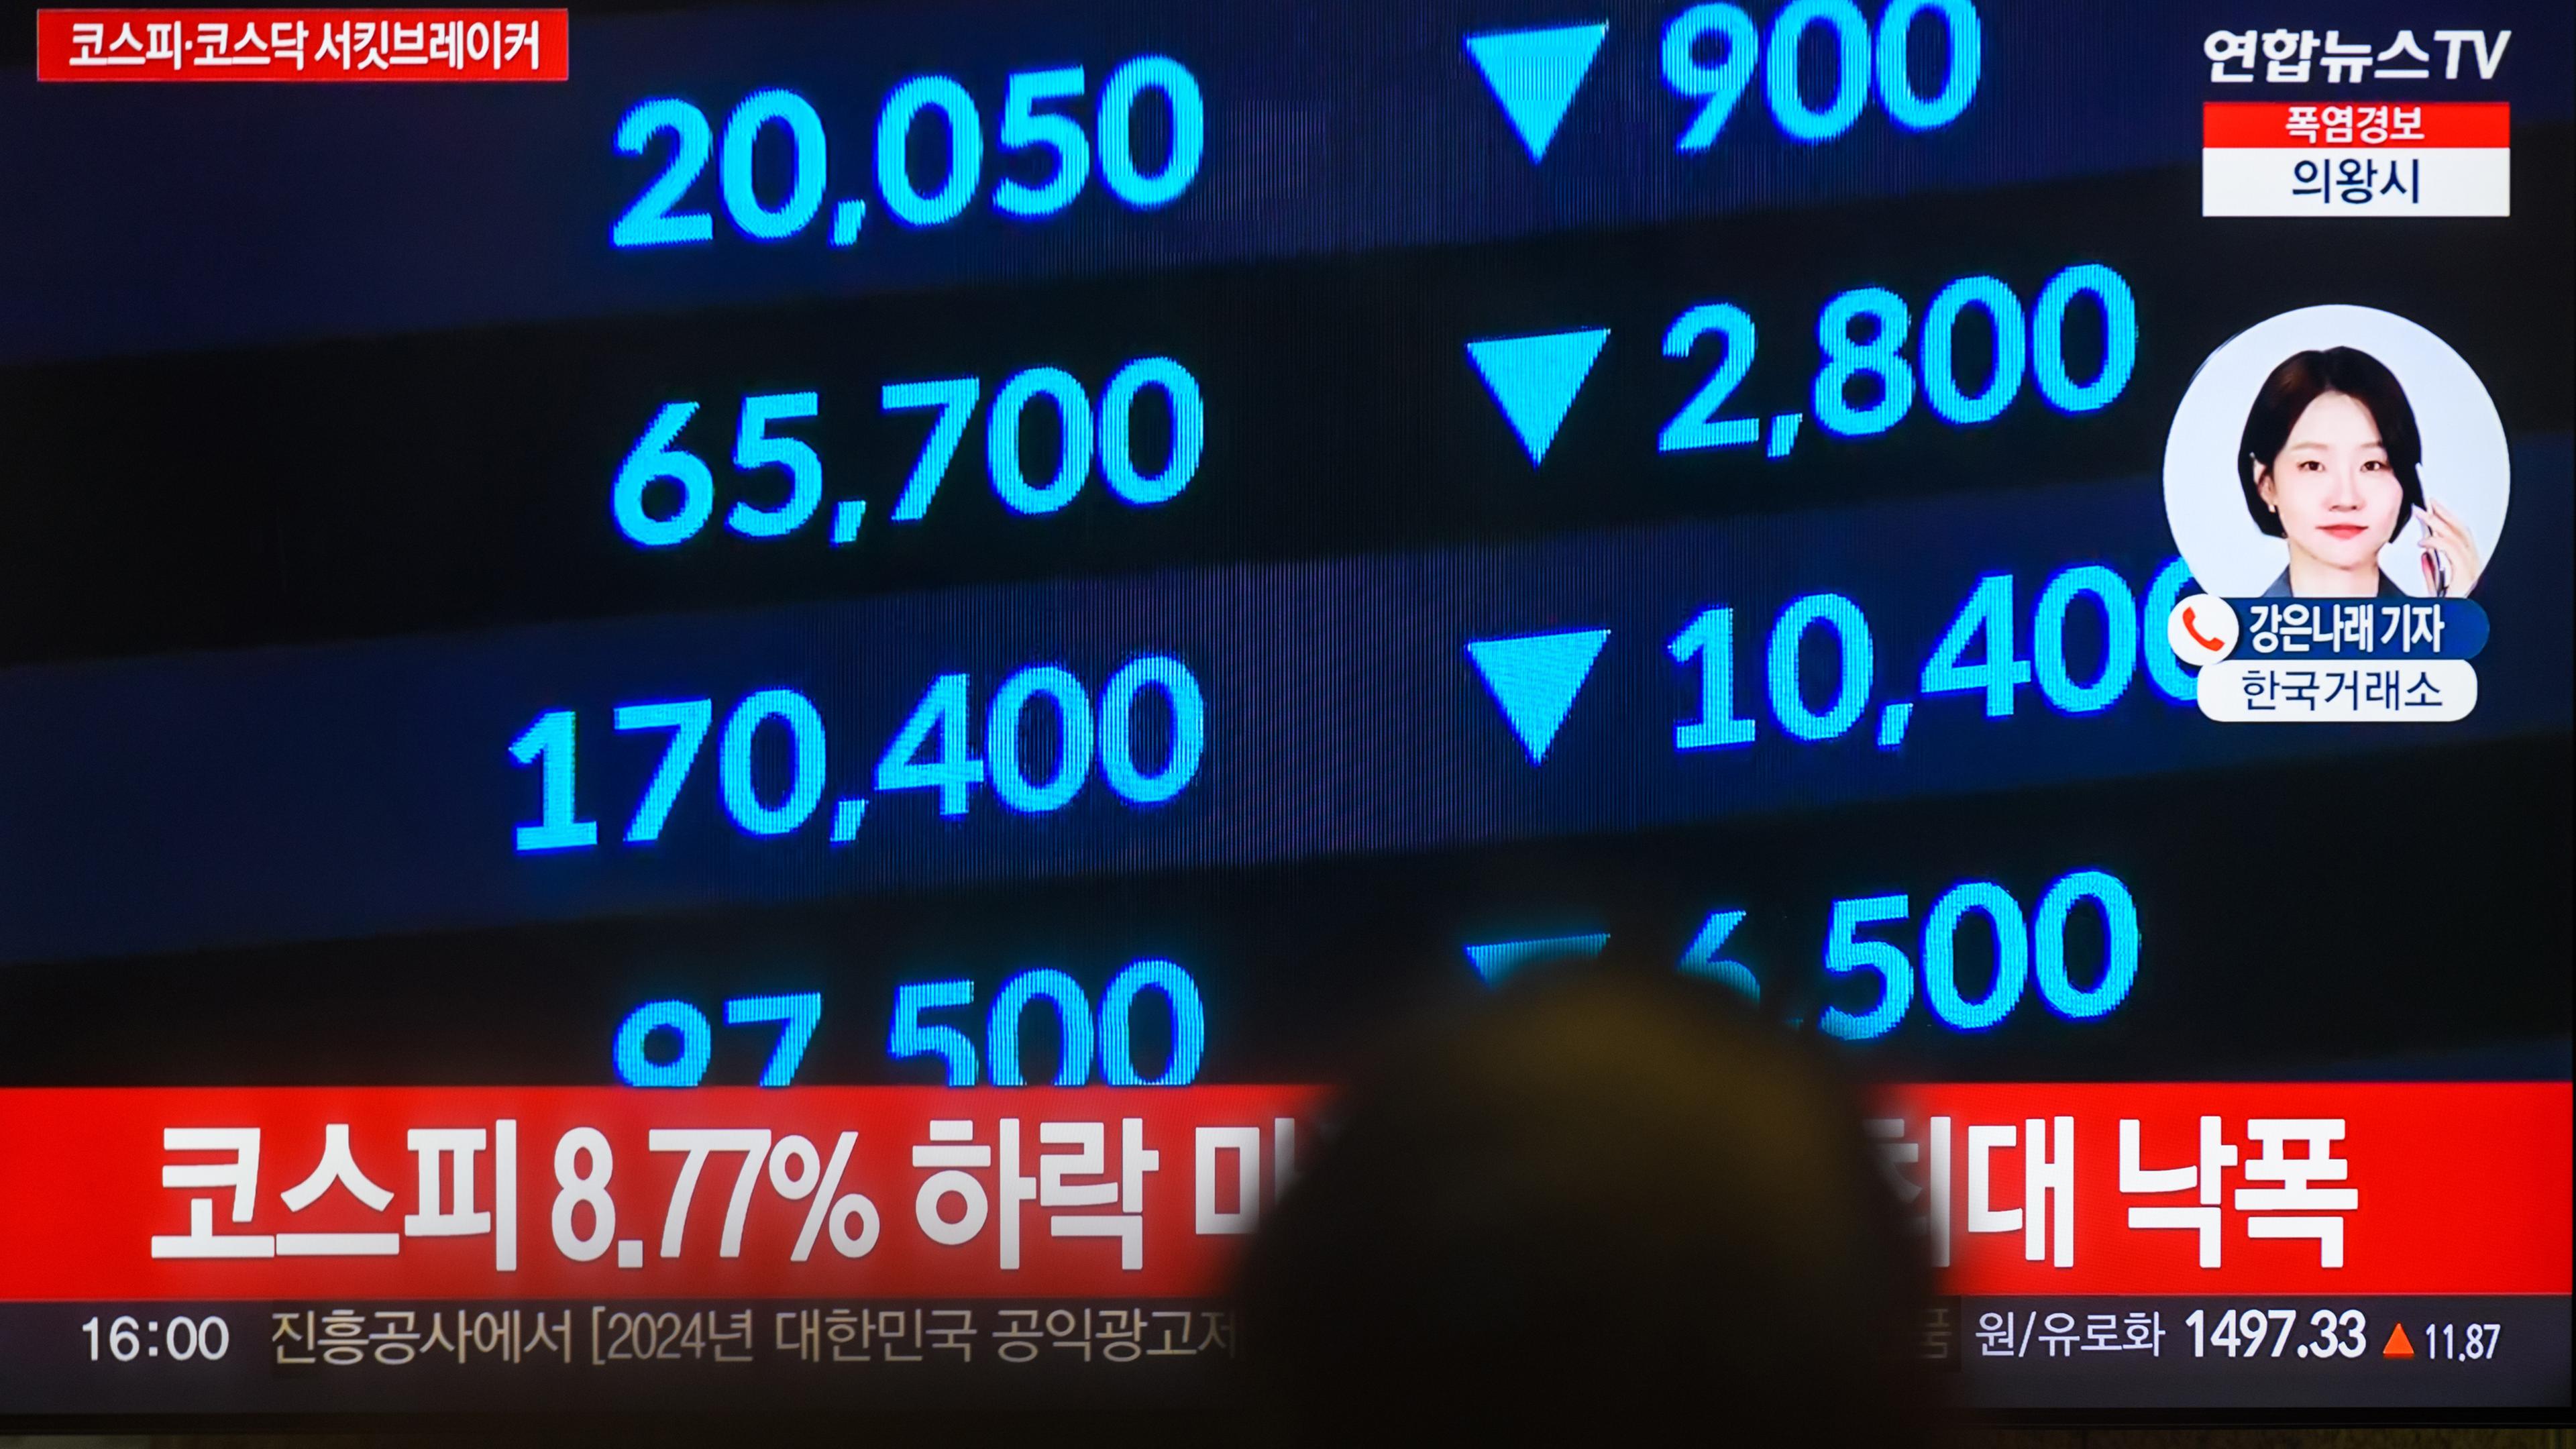 Südkorea, Seoul: Ein 24-Stunden-Fernsehsender von Yonhapnews am Yongsan-Bahnhof zeigt eine Nachrichtensendung mit dem Südkoreanischen Aktienindex.